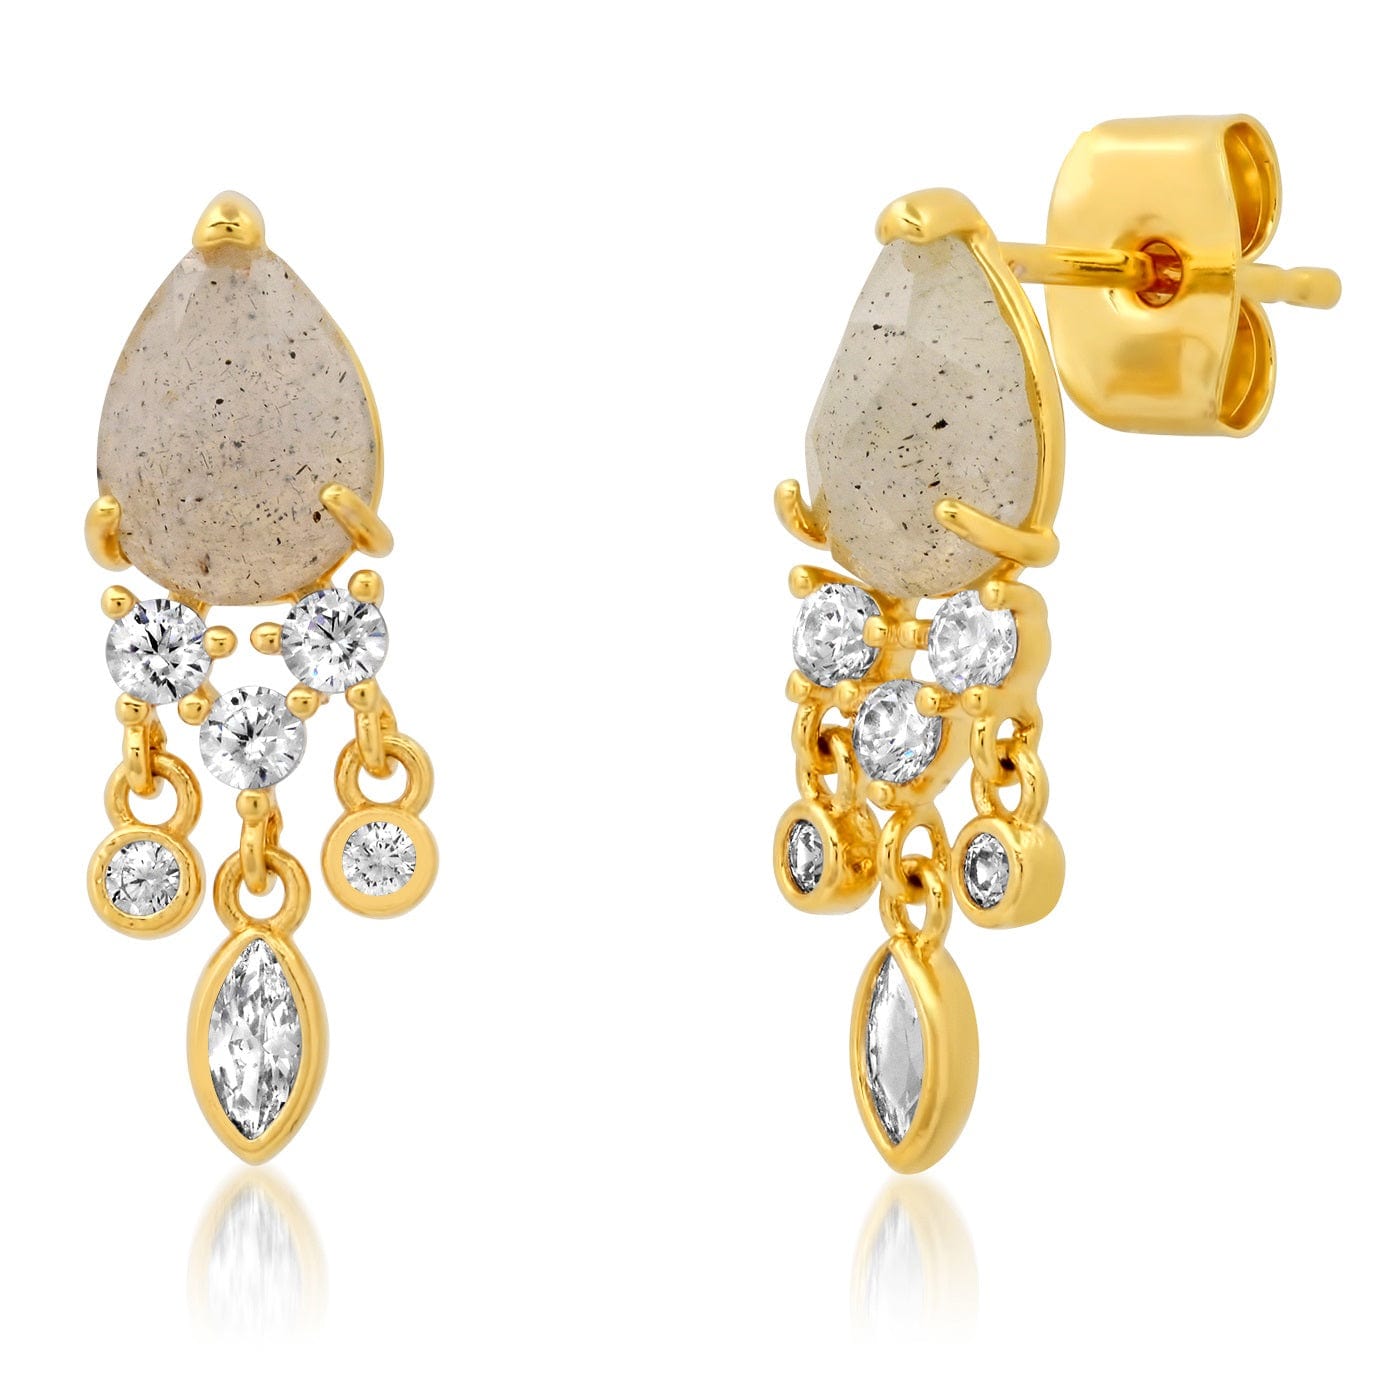 TAI JEWELRY Earrings LABRADORITE Stone Drop Chandelier Earrings